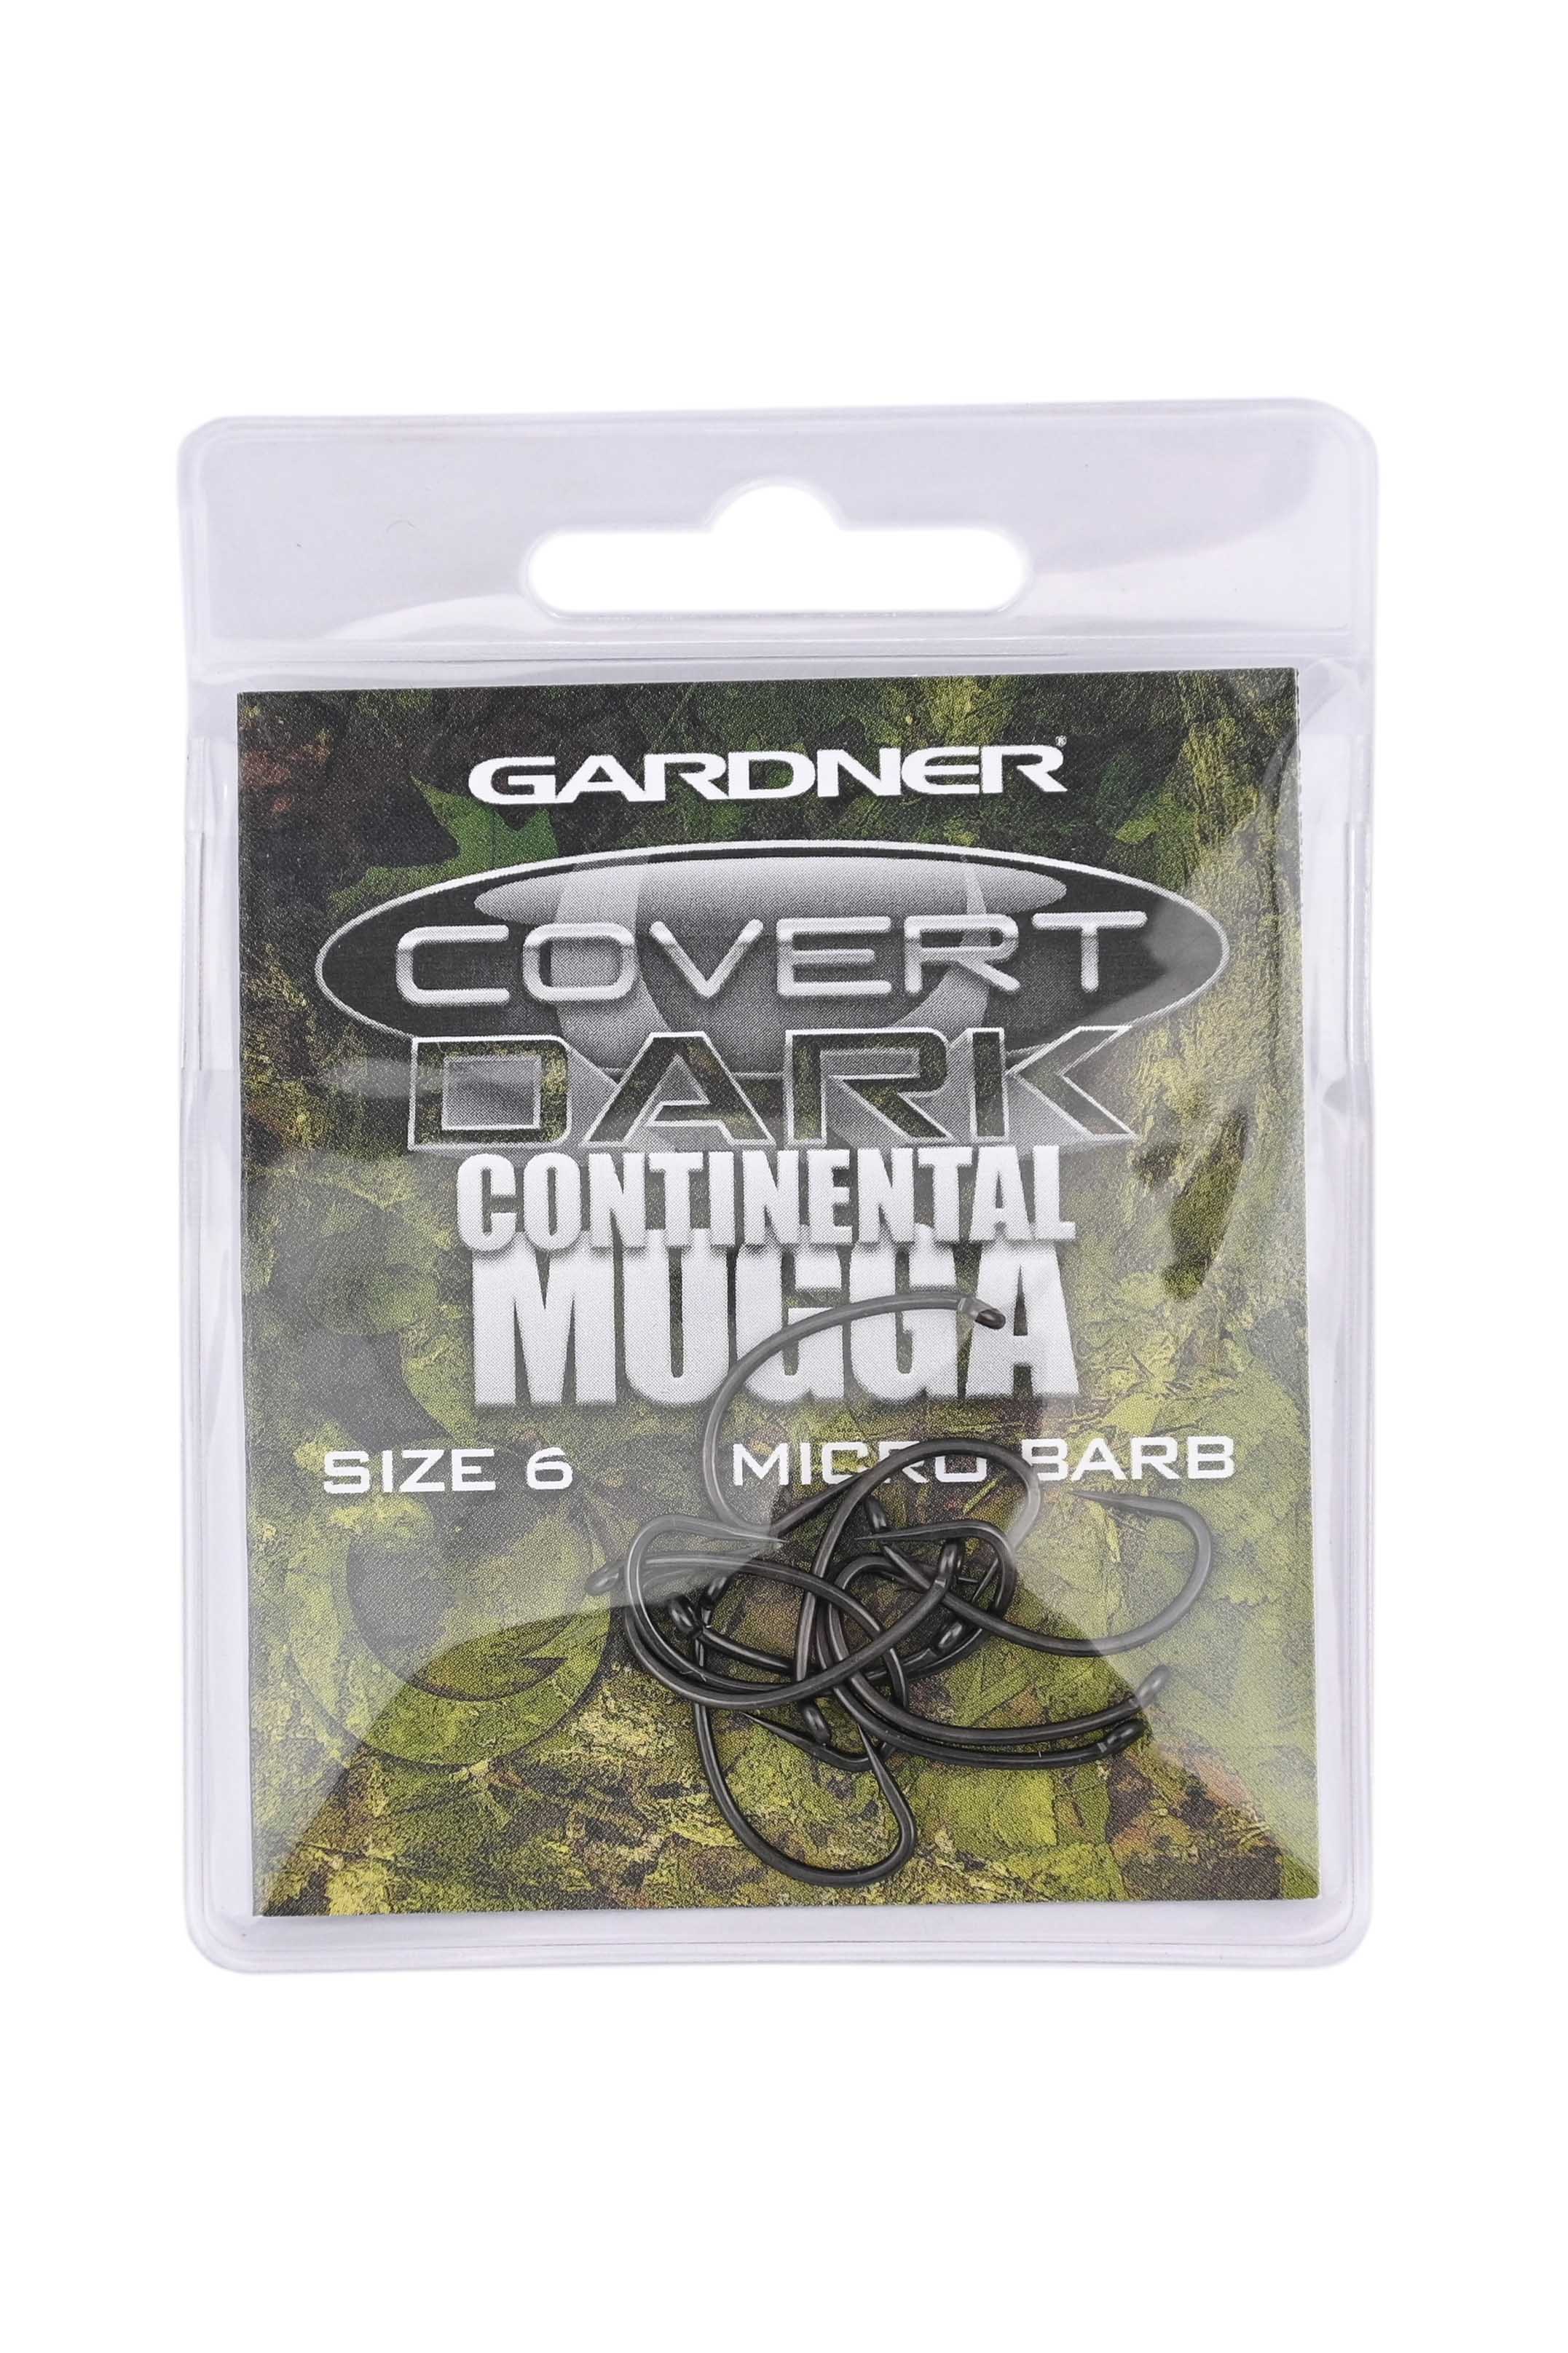 Крючки Gardner Covert dark continental mugga barbed №6